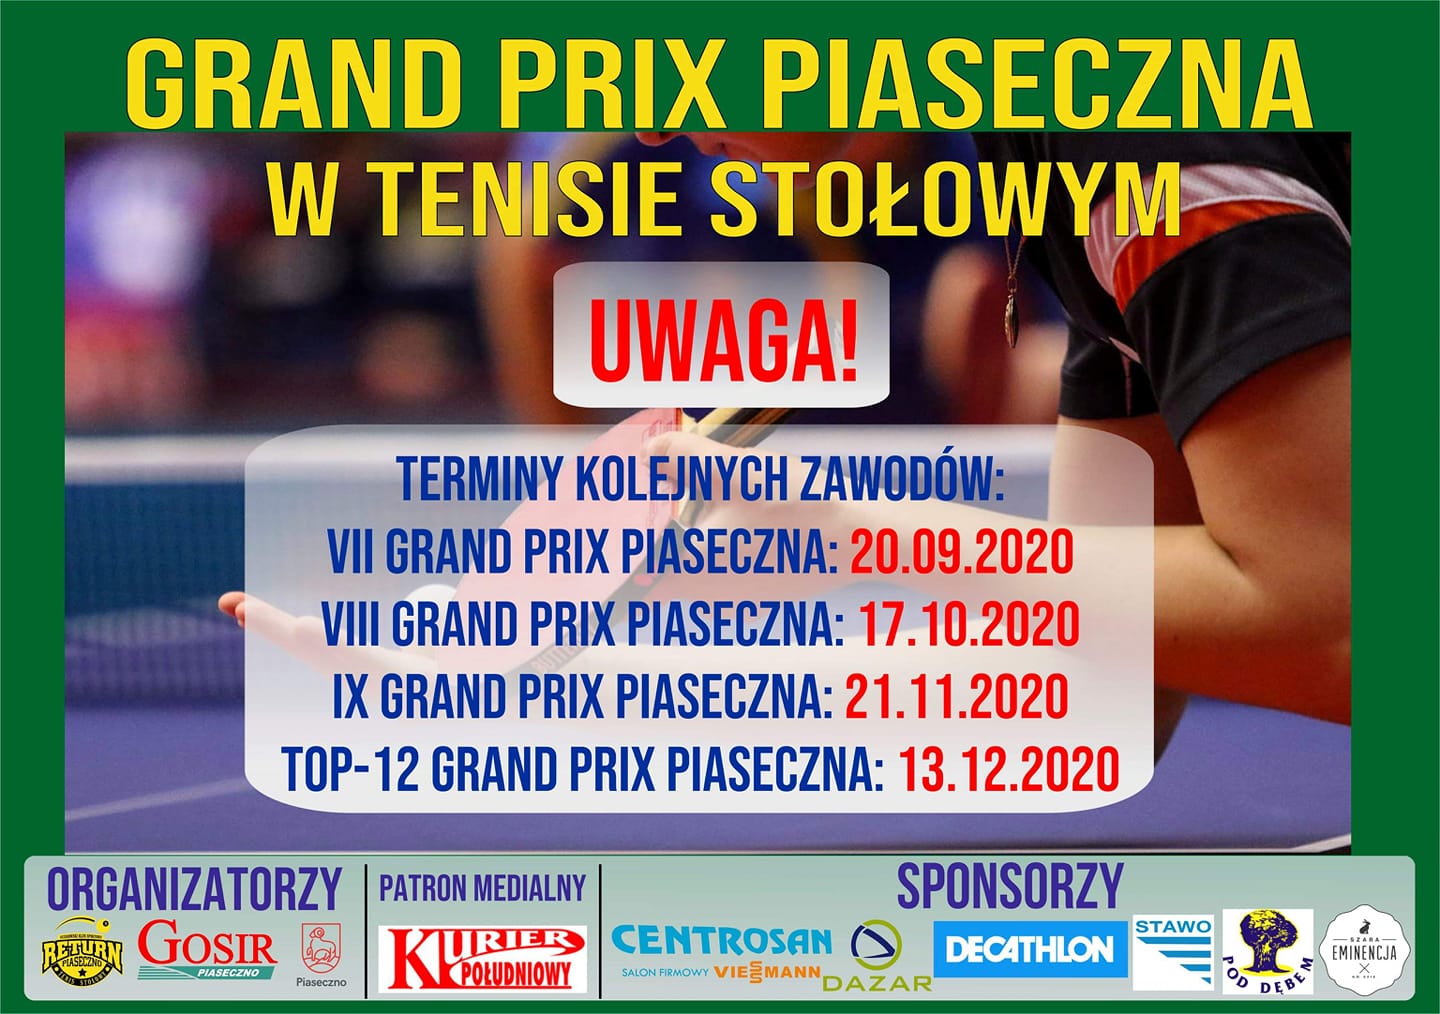 Plakat turnieju Grand Prix Piaseczna w tenisie stołowym 2019/2020 - VII Turniej